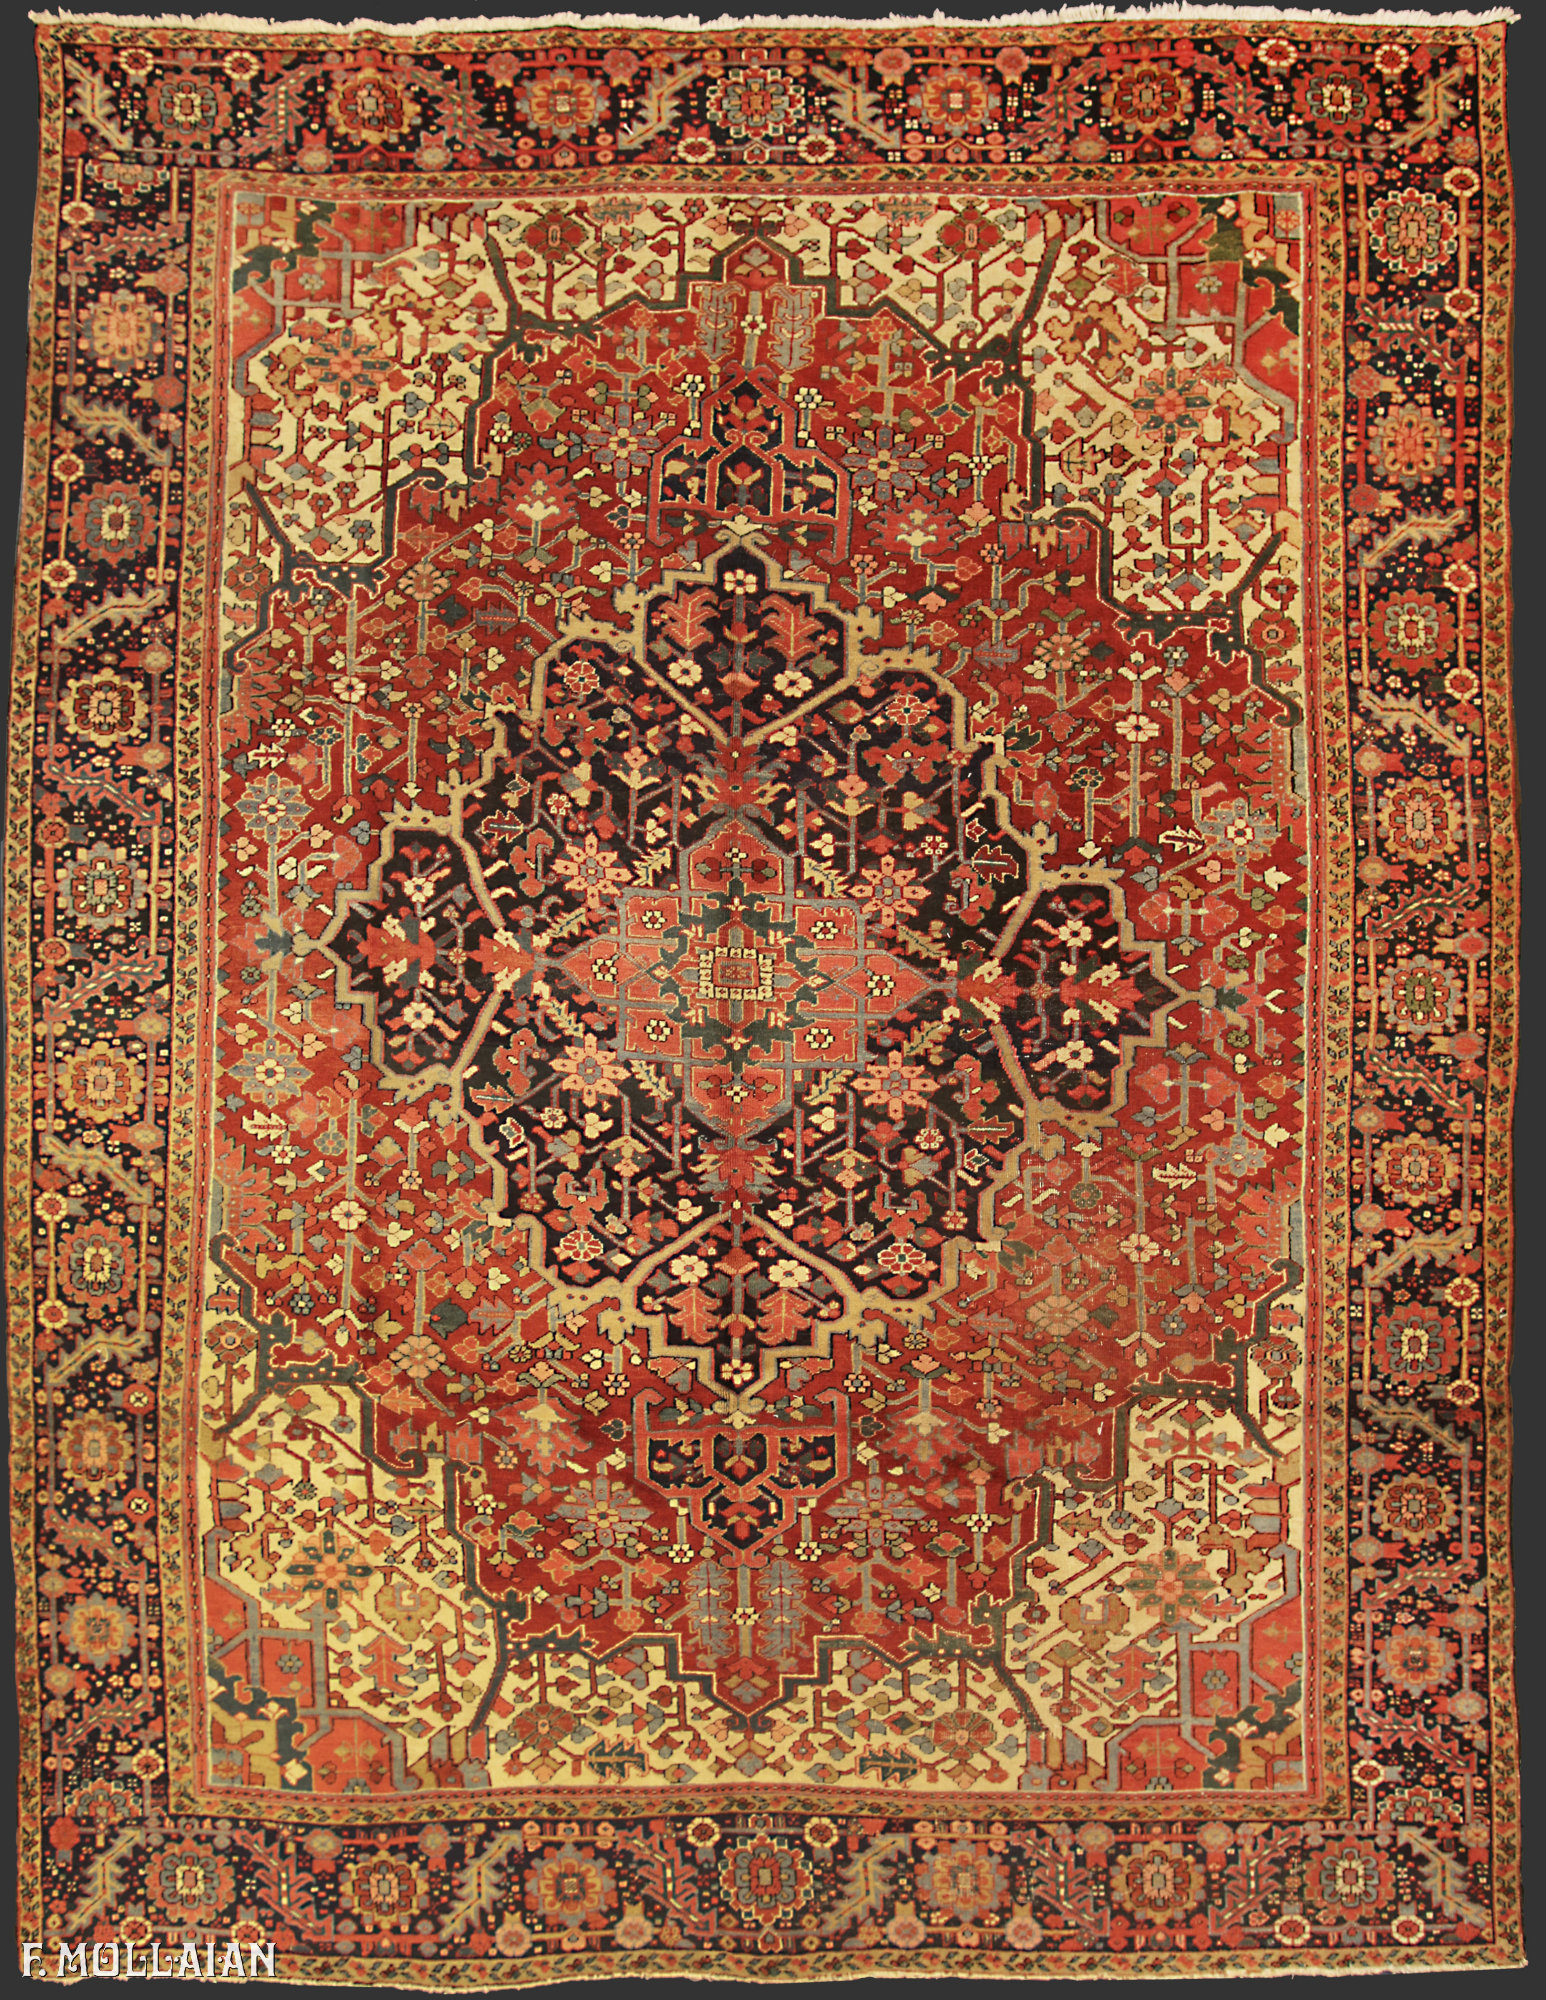 Teppich Persischer Antiker Heriz n°:97080710